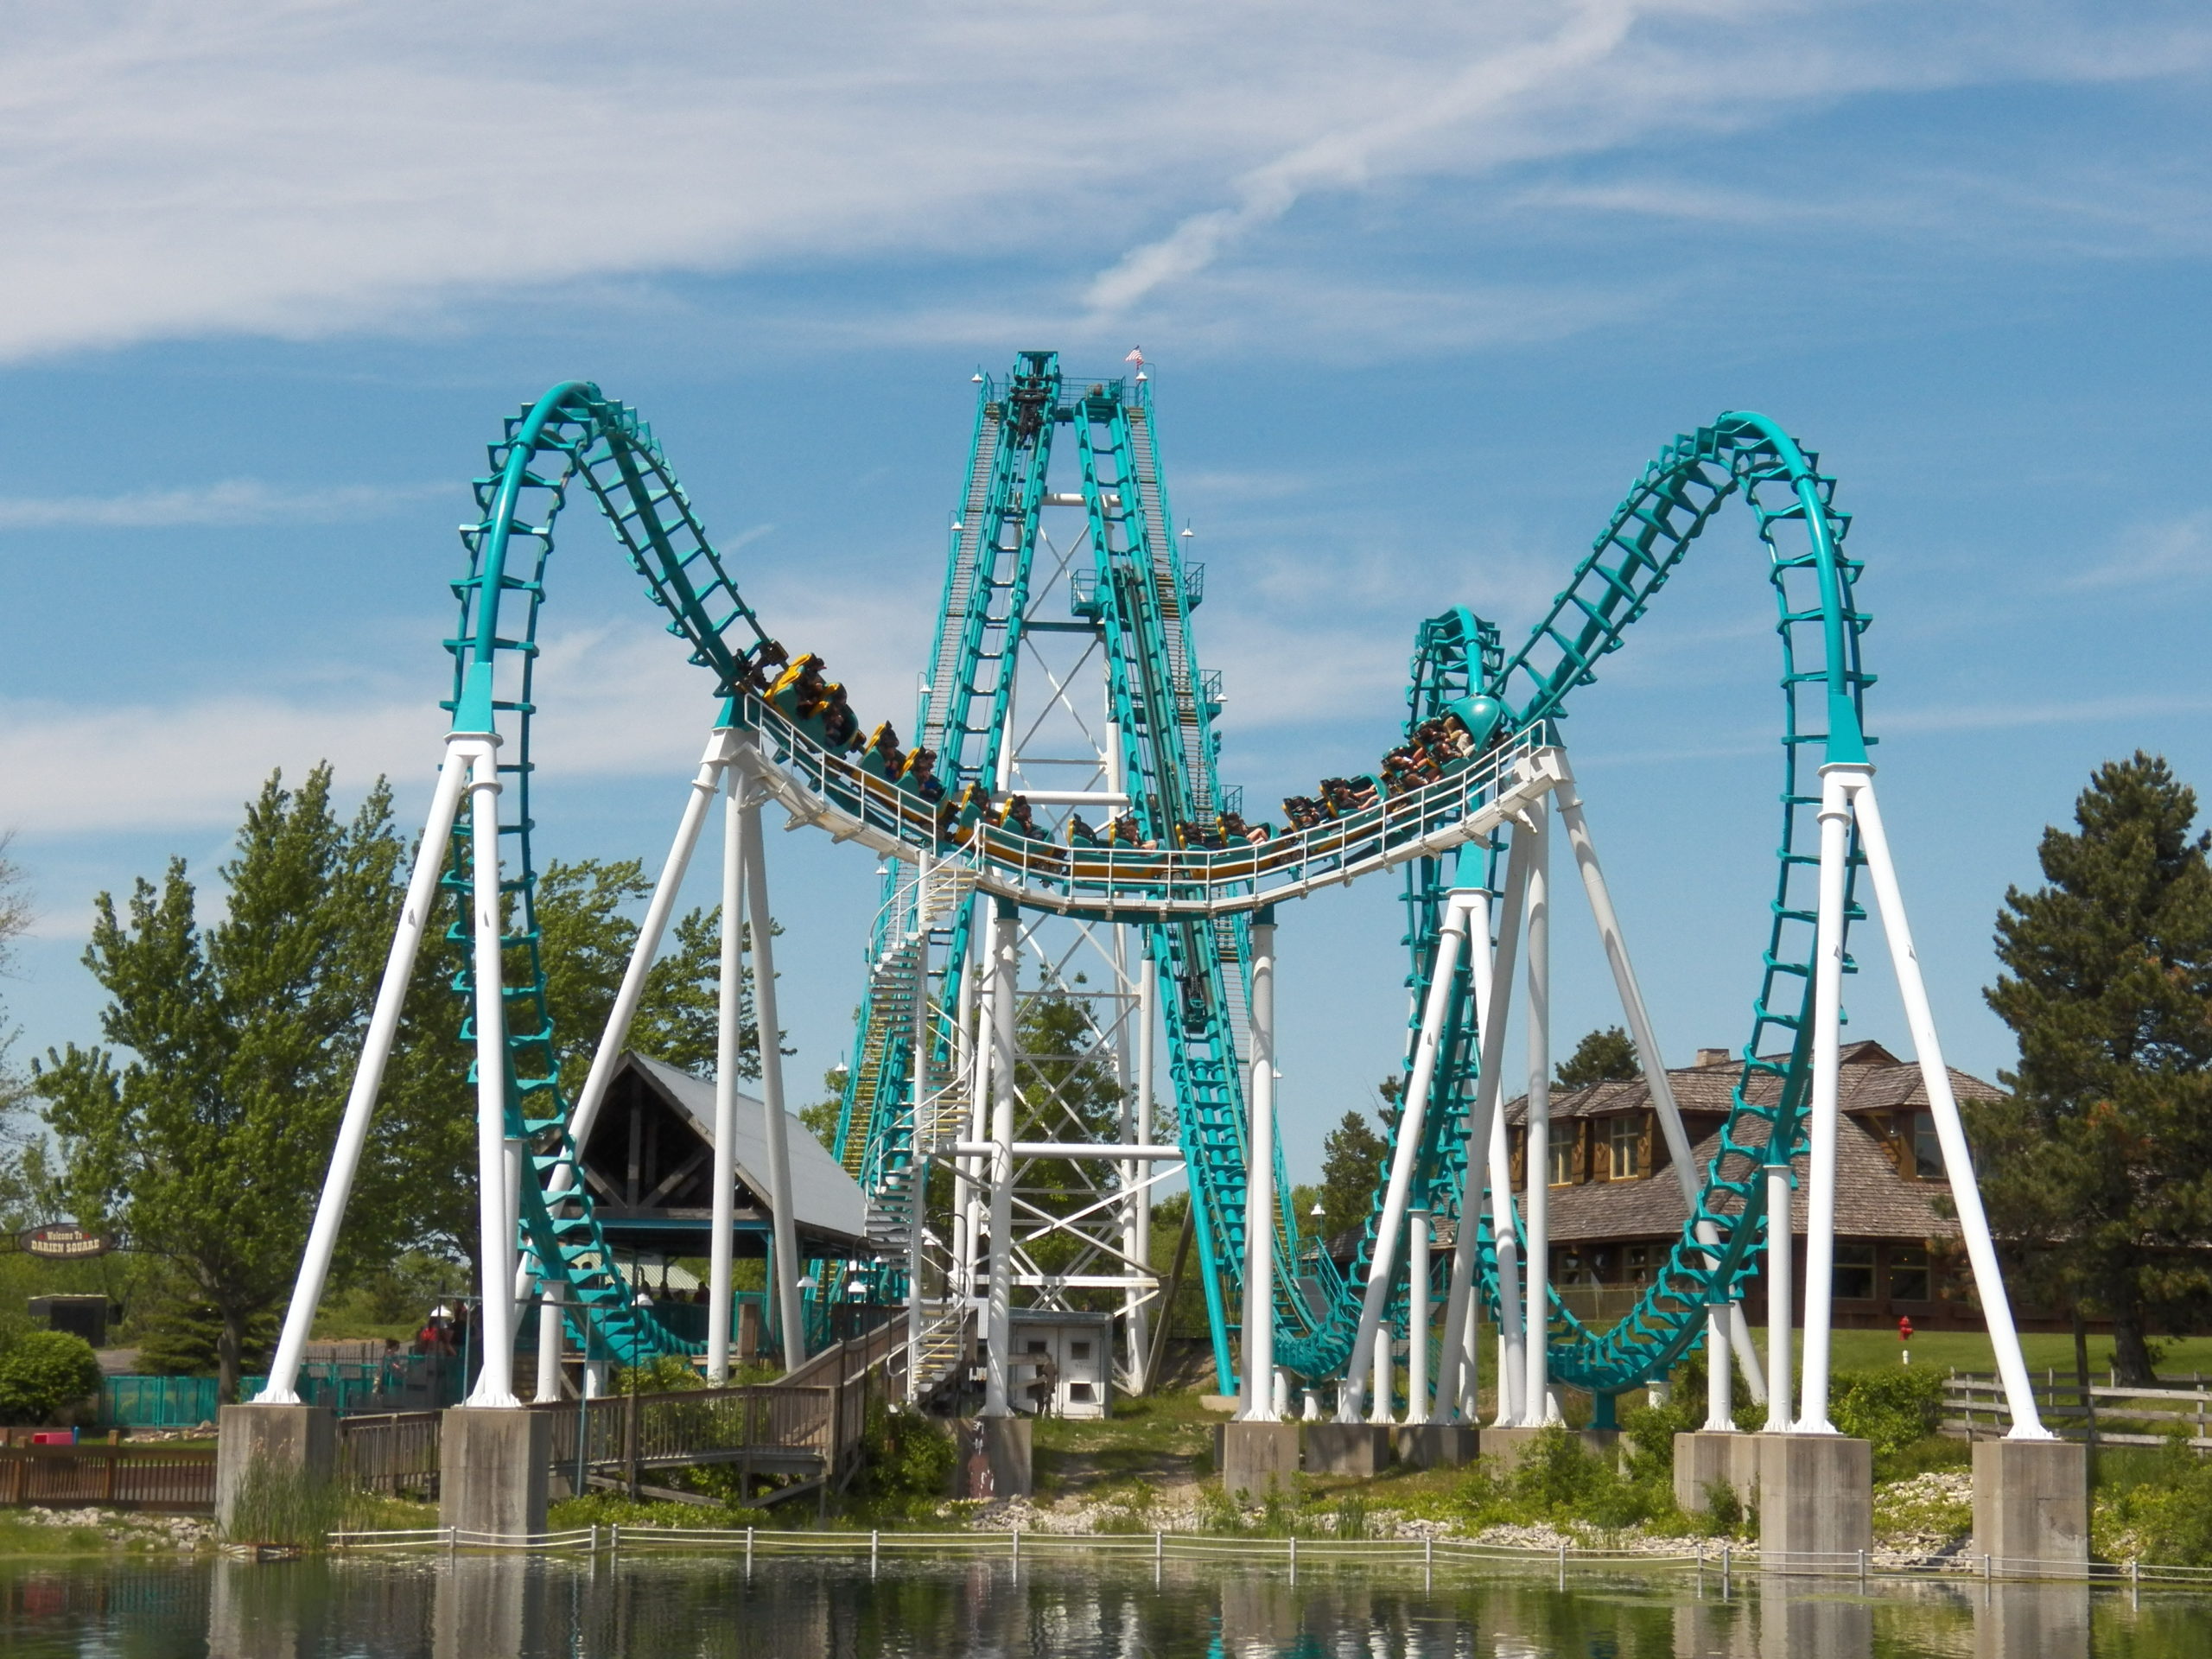 Thrill Rides at Six Flags Darien Lake in Buffalo, NY